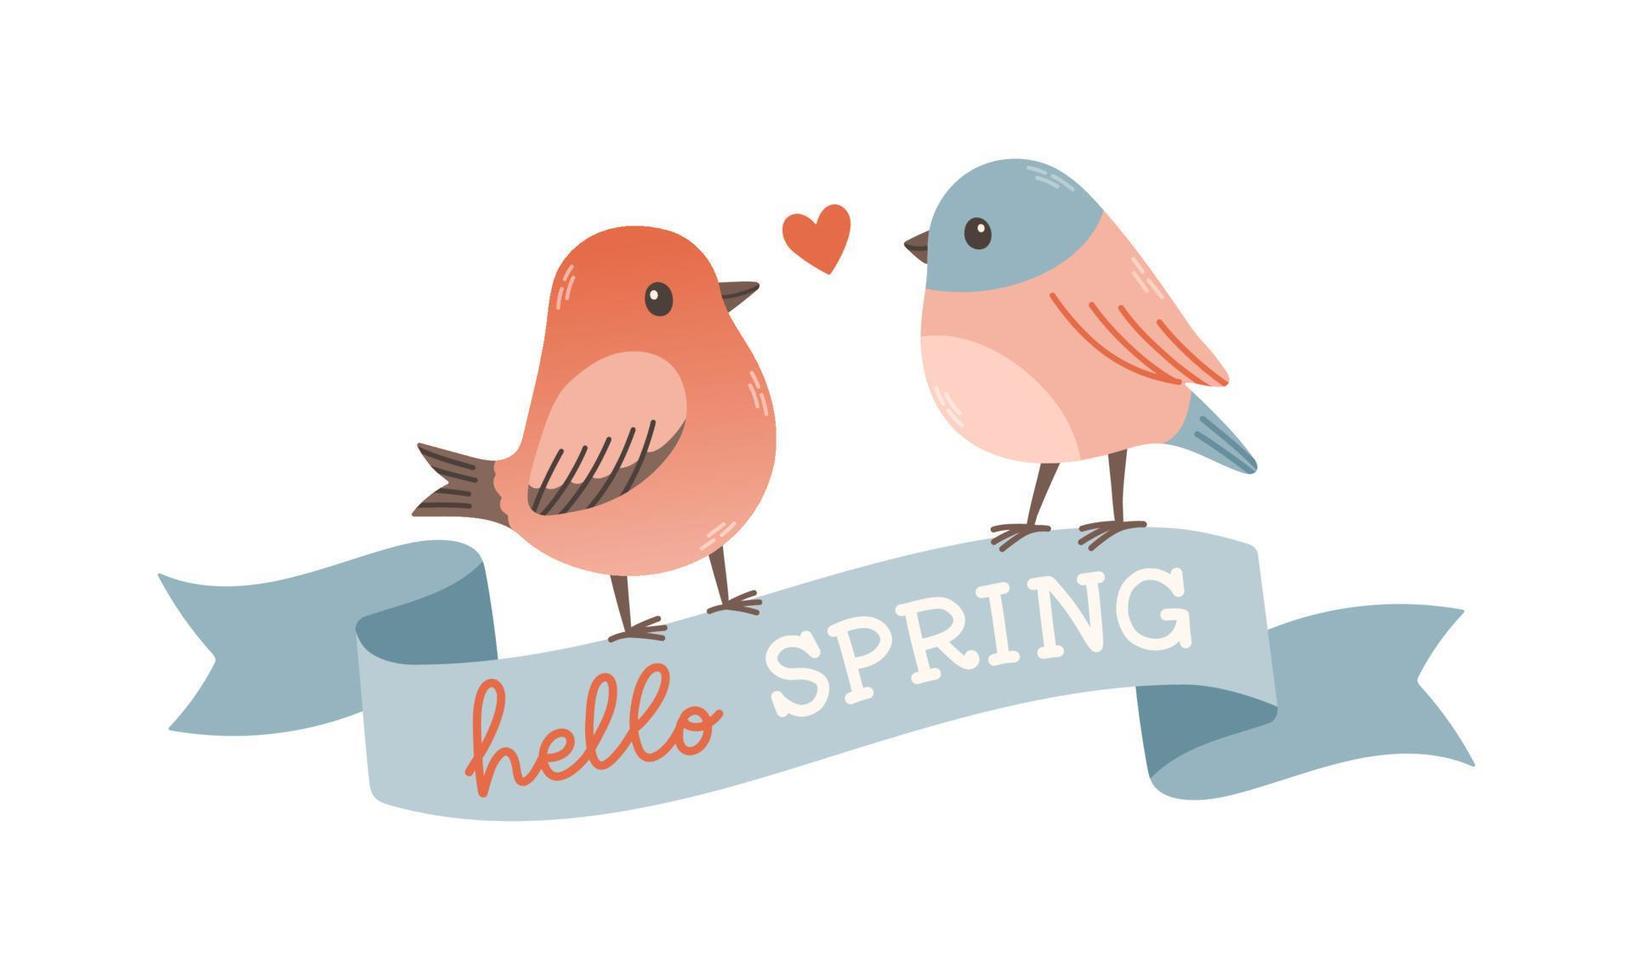 Frühling Etikette mit Jahreszeit Zitate, Vogel, Schleife. Hand gezeichnet Frühling Vektor Illustration.